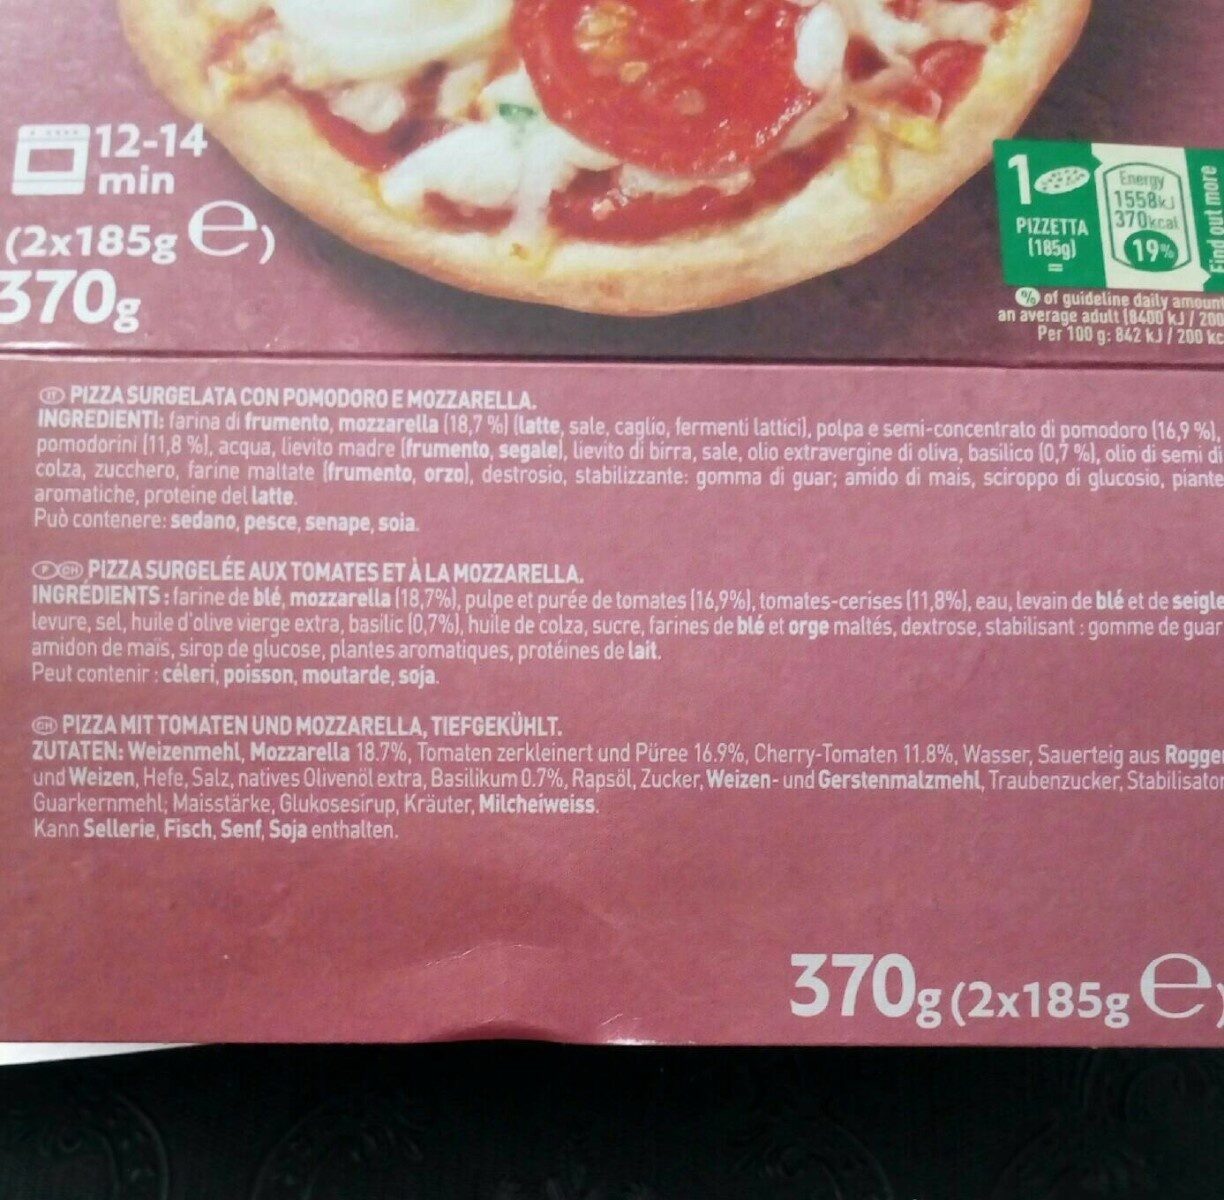 BUITONI PIZZETTA pizza surgelée Margherita 2X185g - Tableau nutritionnel